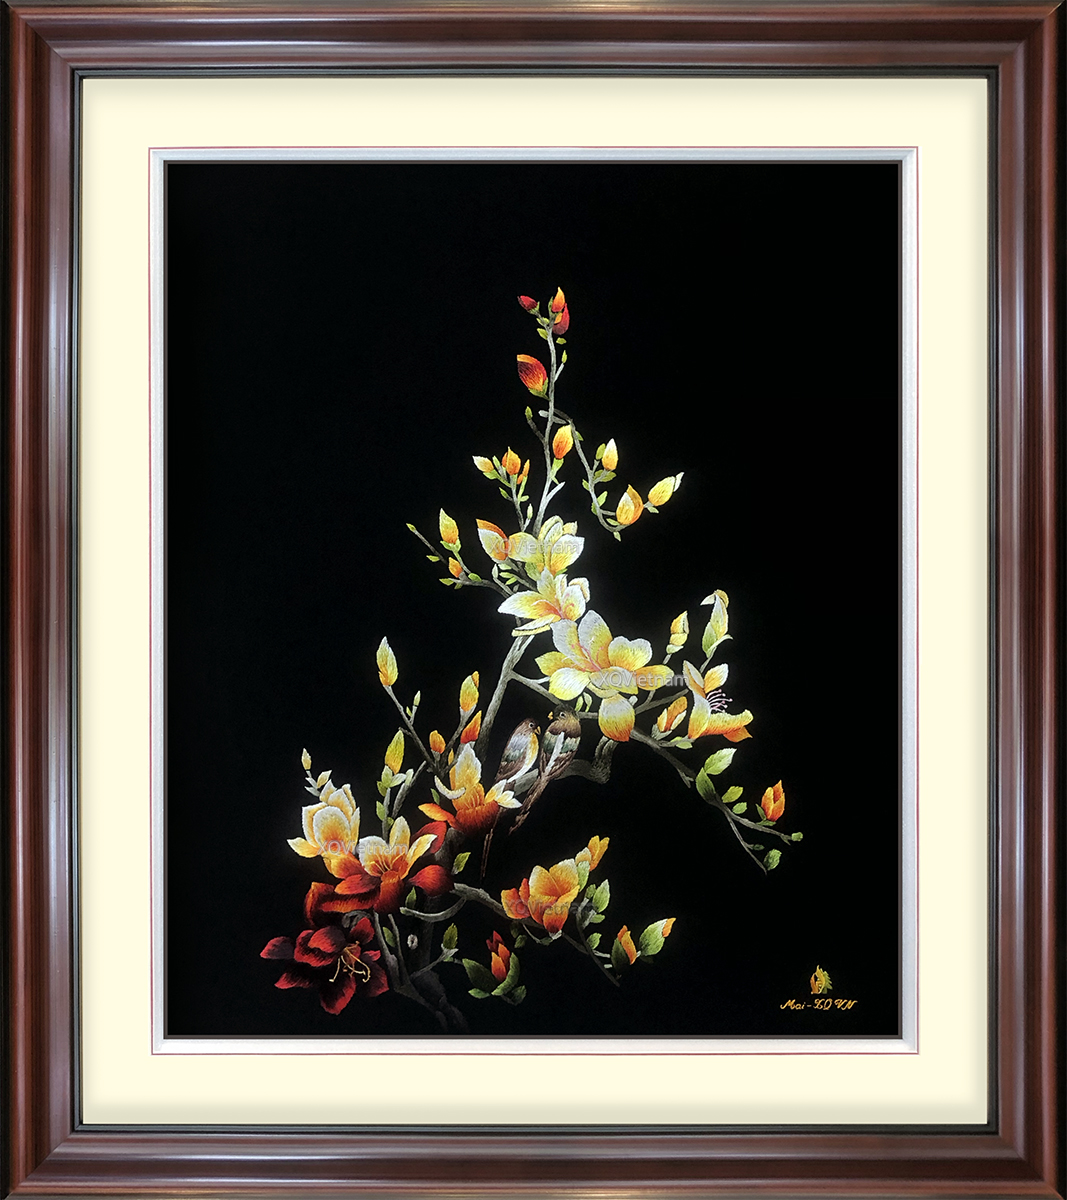 Hoa cỏ thiên nhiên - hoa Mộc Lan (H 42L nền đen)